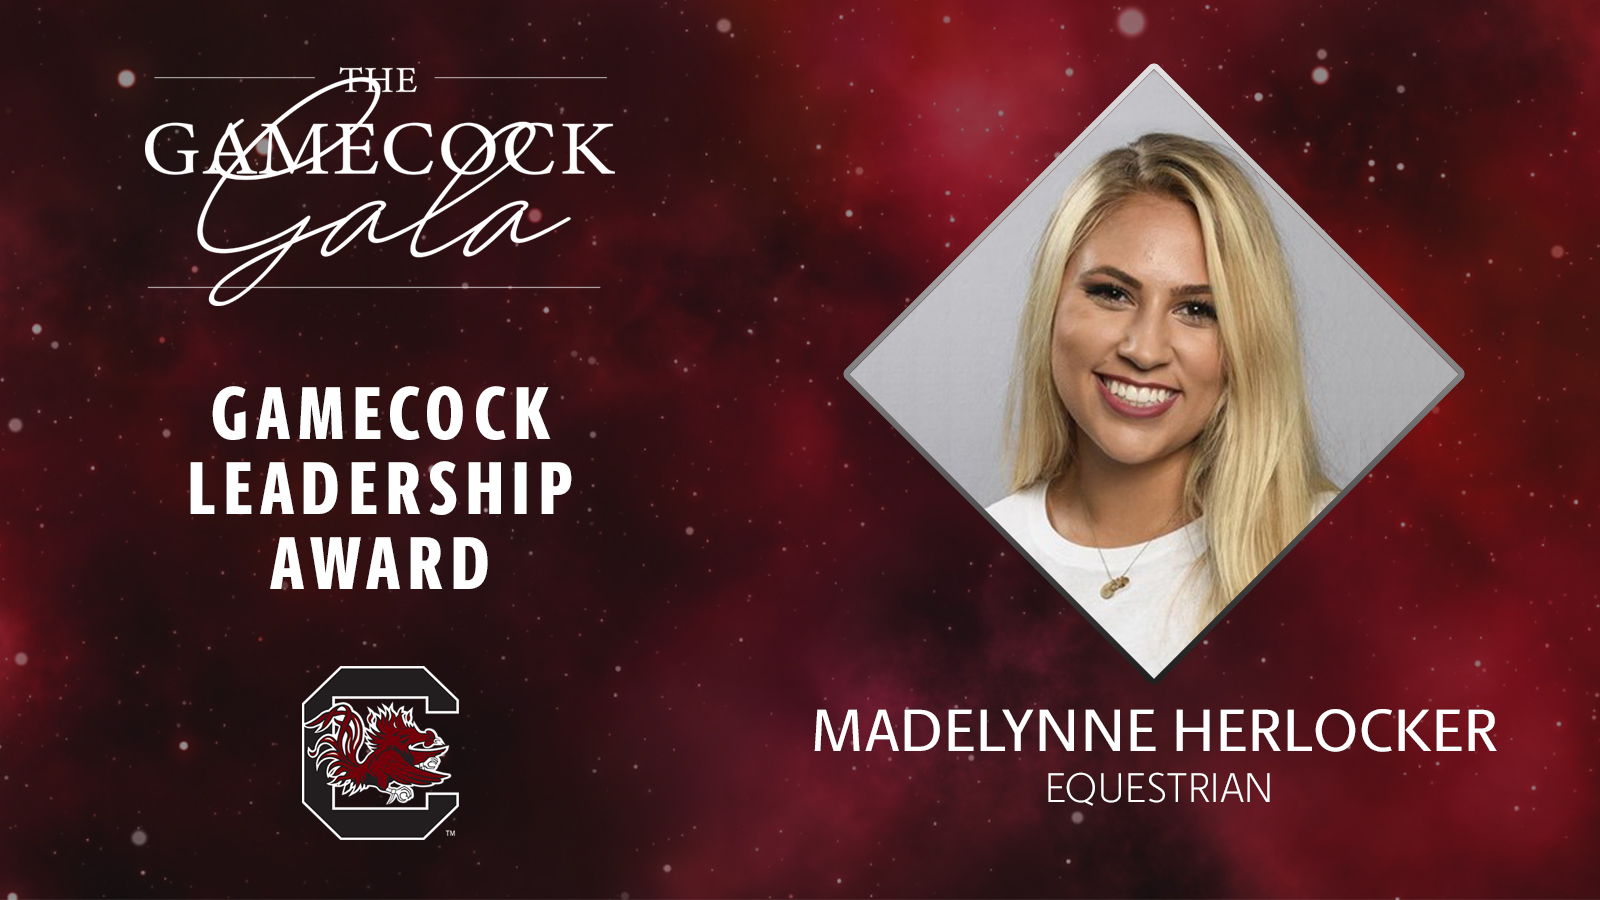 Gamecock Gala Awards: Gamecock Leadership Award - Madelynne Herlocker